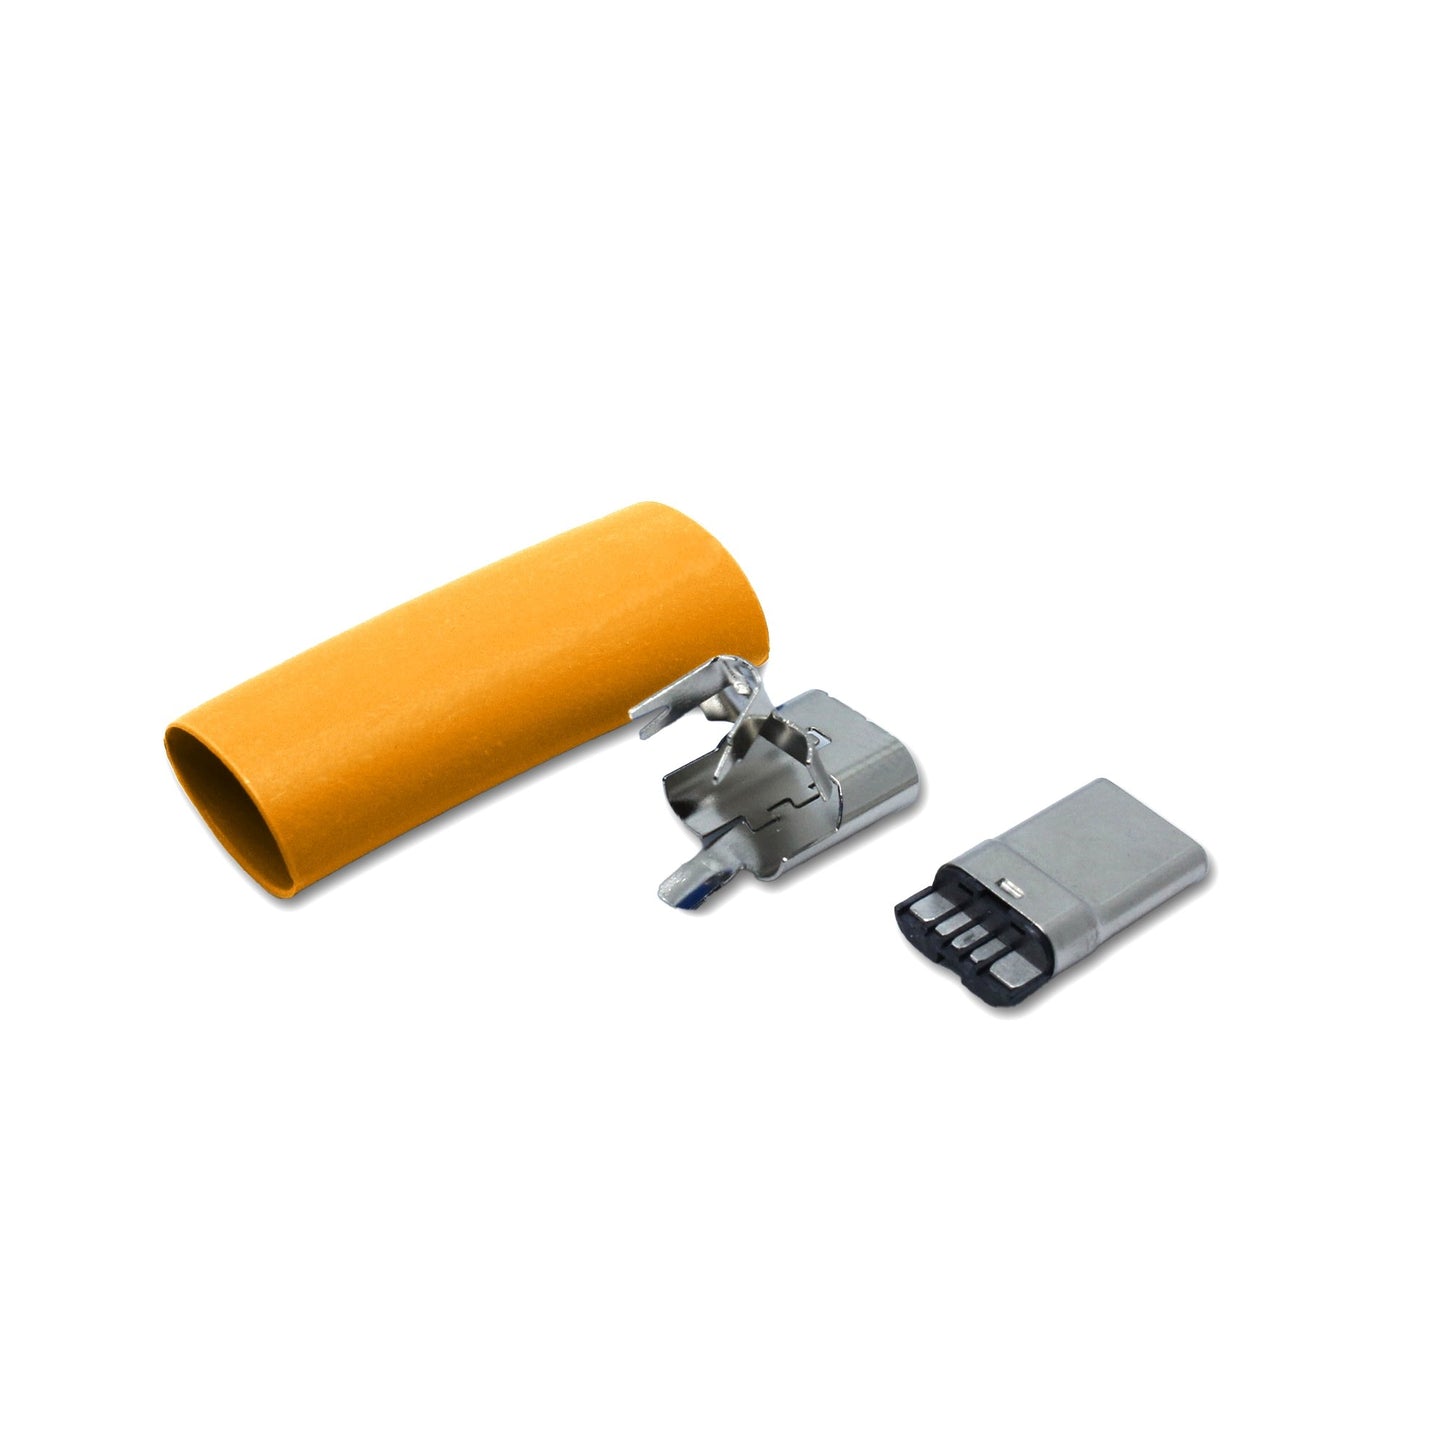 Einzelteile USB C Stecker in orange, Ersatzteil für ein USB 2.0 Kabel mit 60 Watt